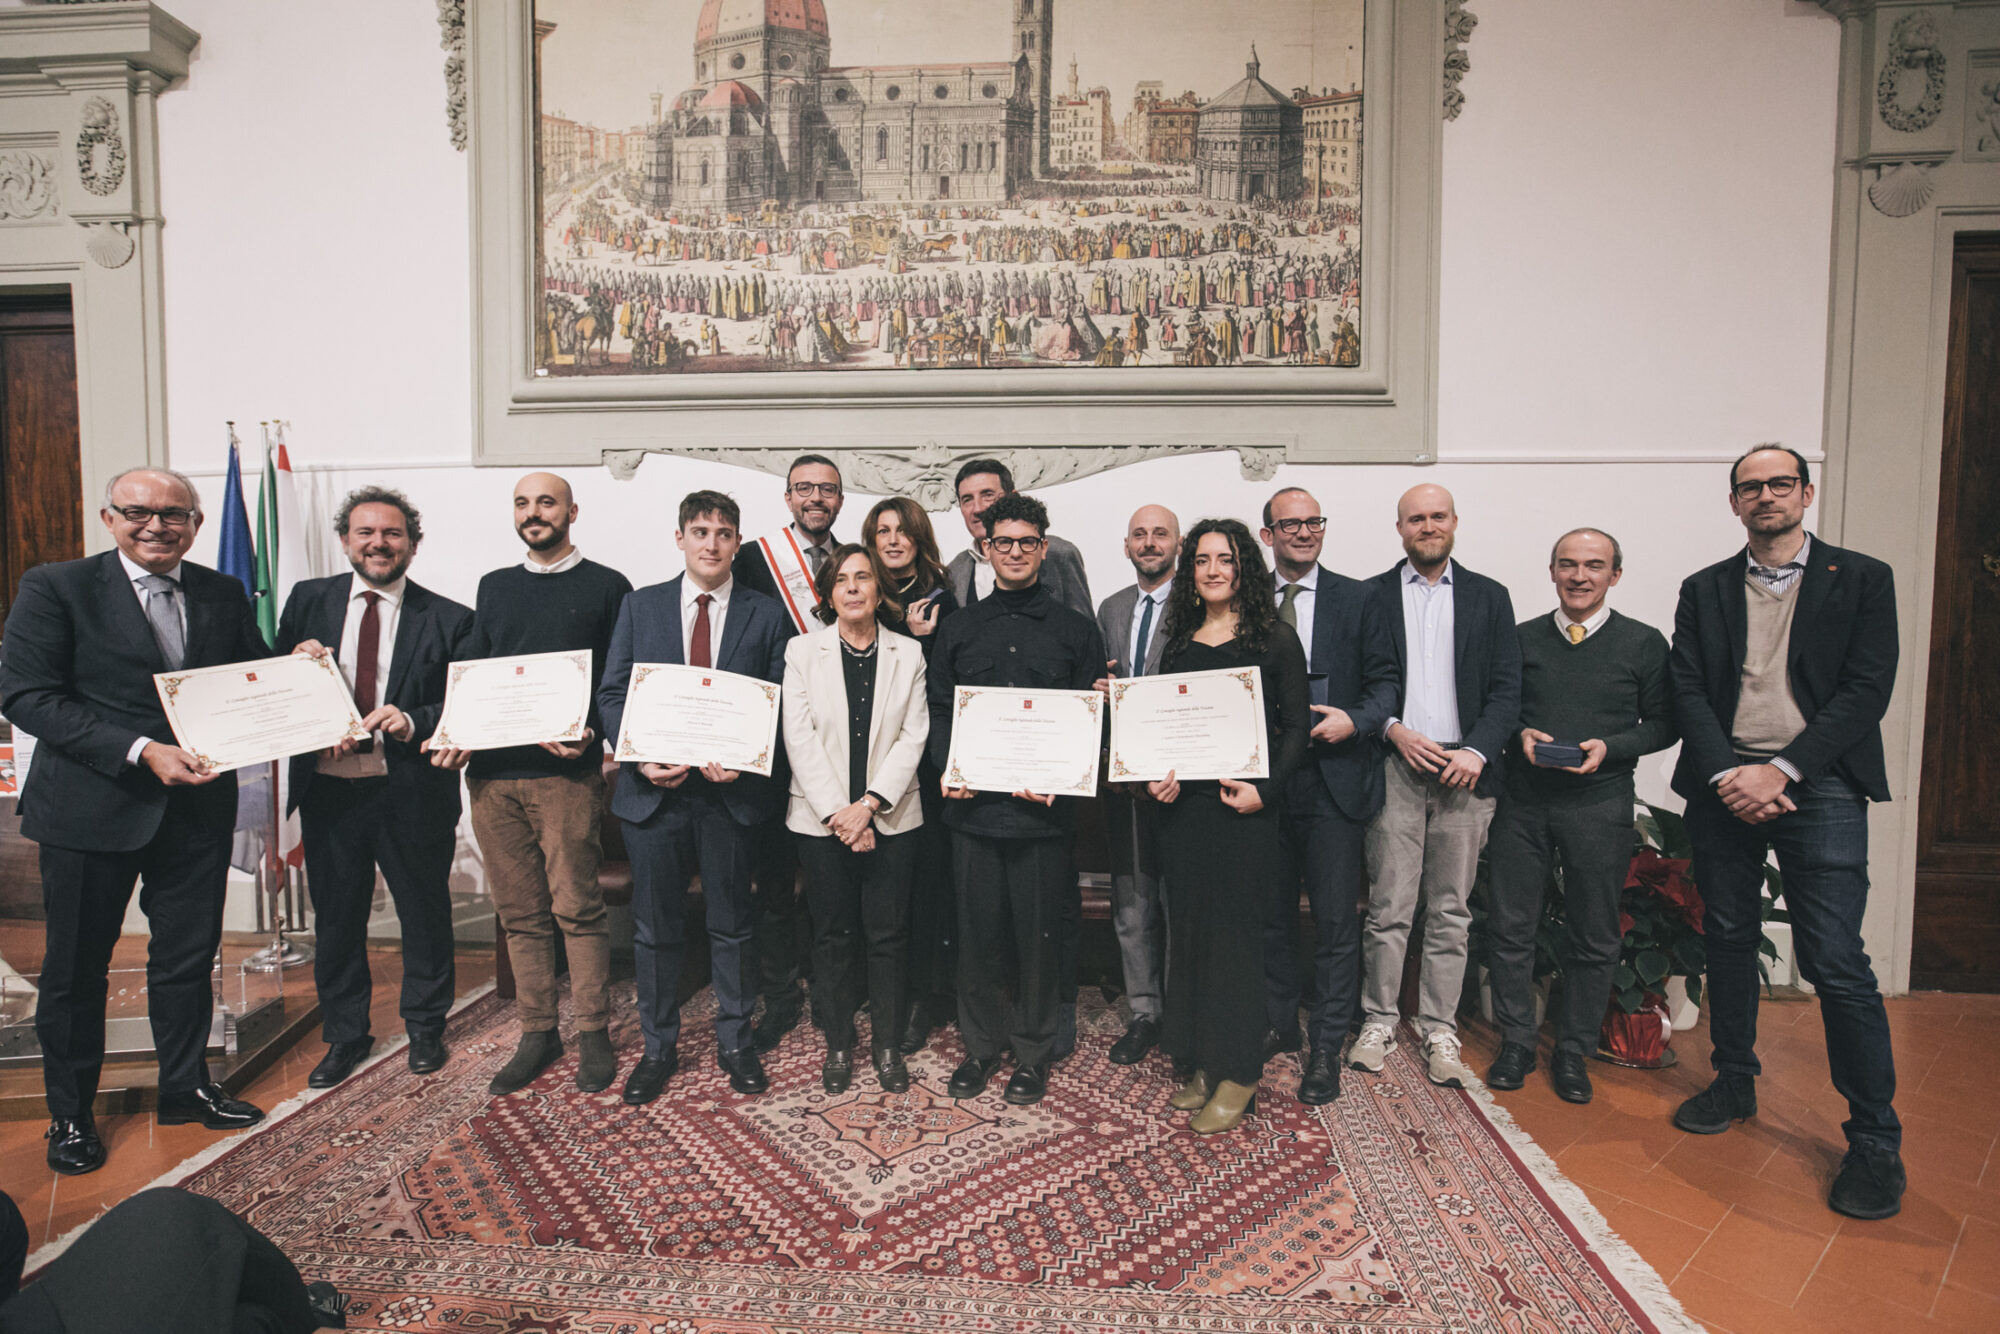 Europa: Seconda edizione del Premio miglior tesi di laurea David Sassoli, la premiazione dei giovani vincitori